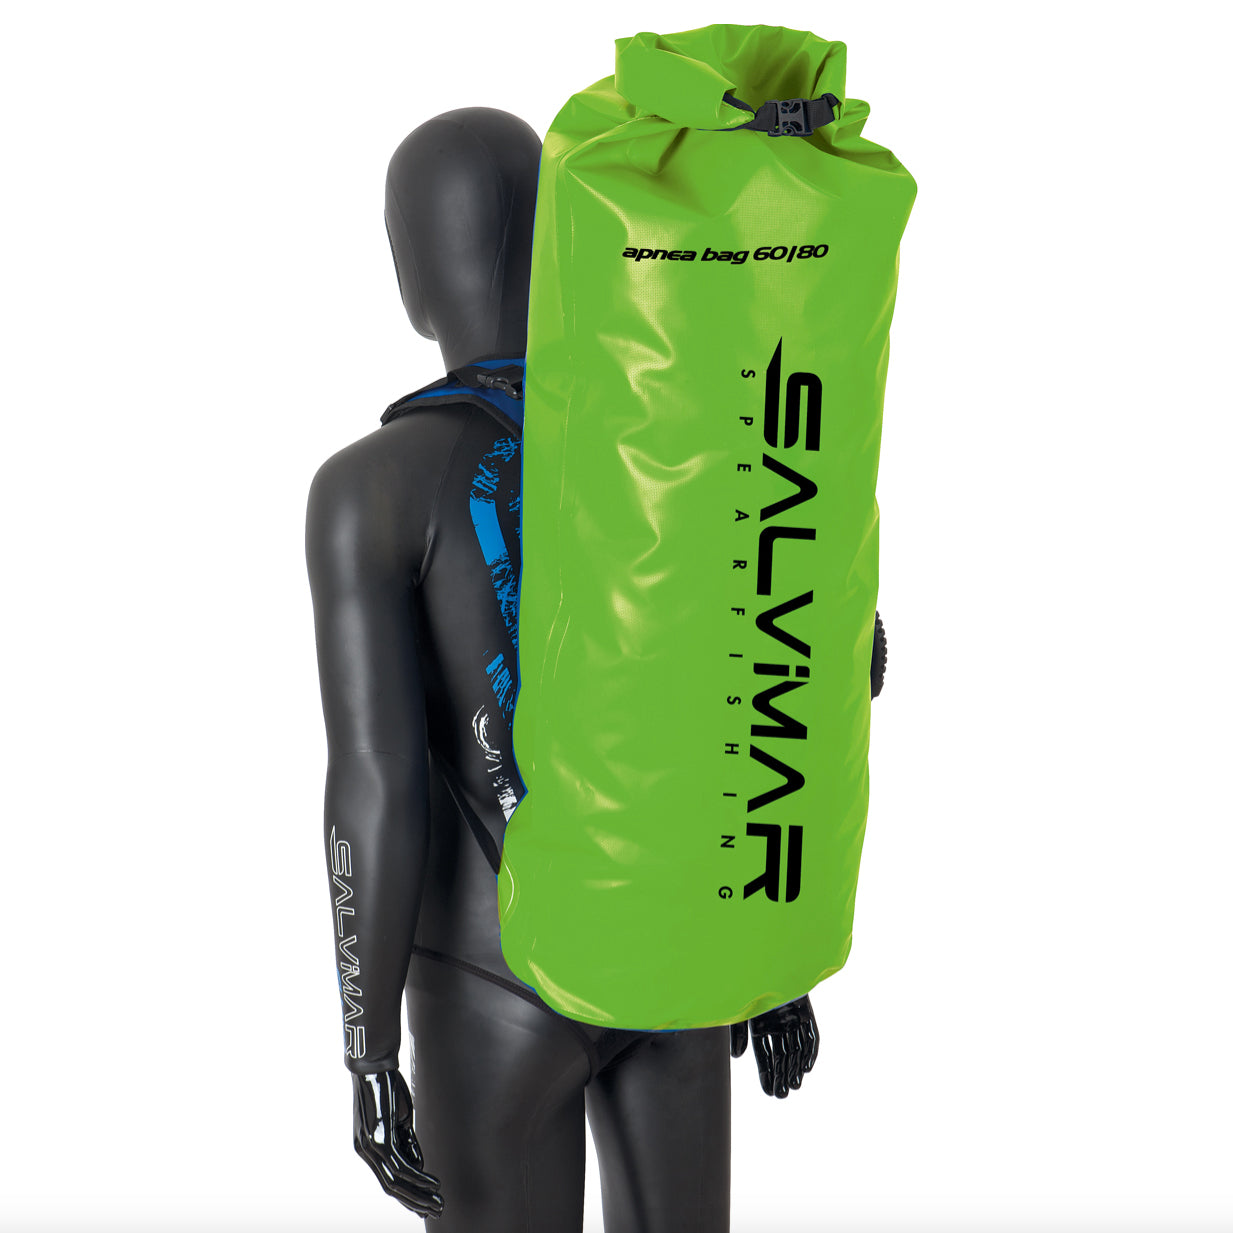 Salvimar Dry backpack 60/80 diving bag